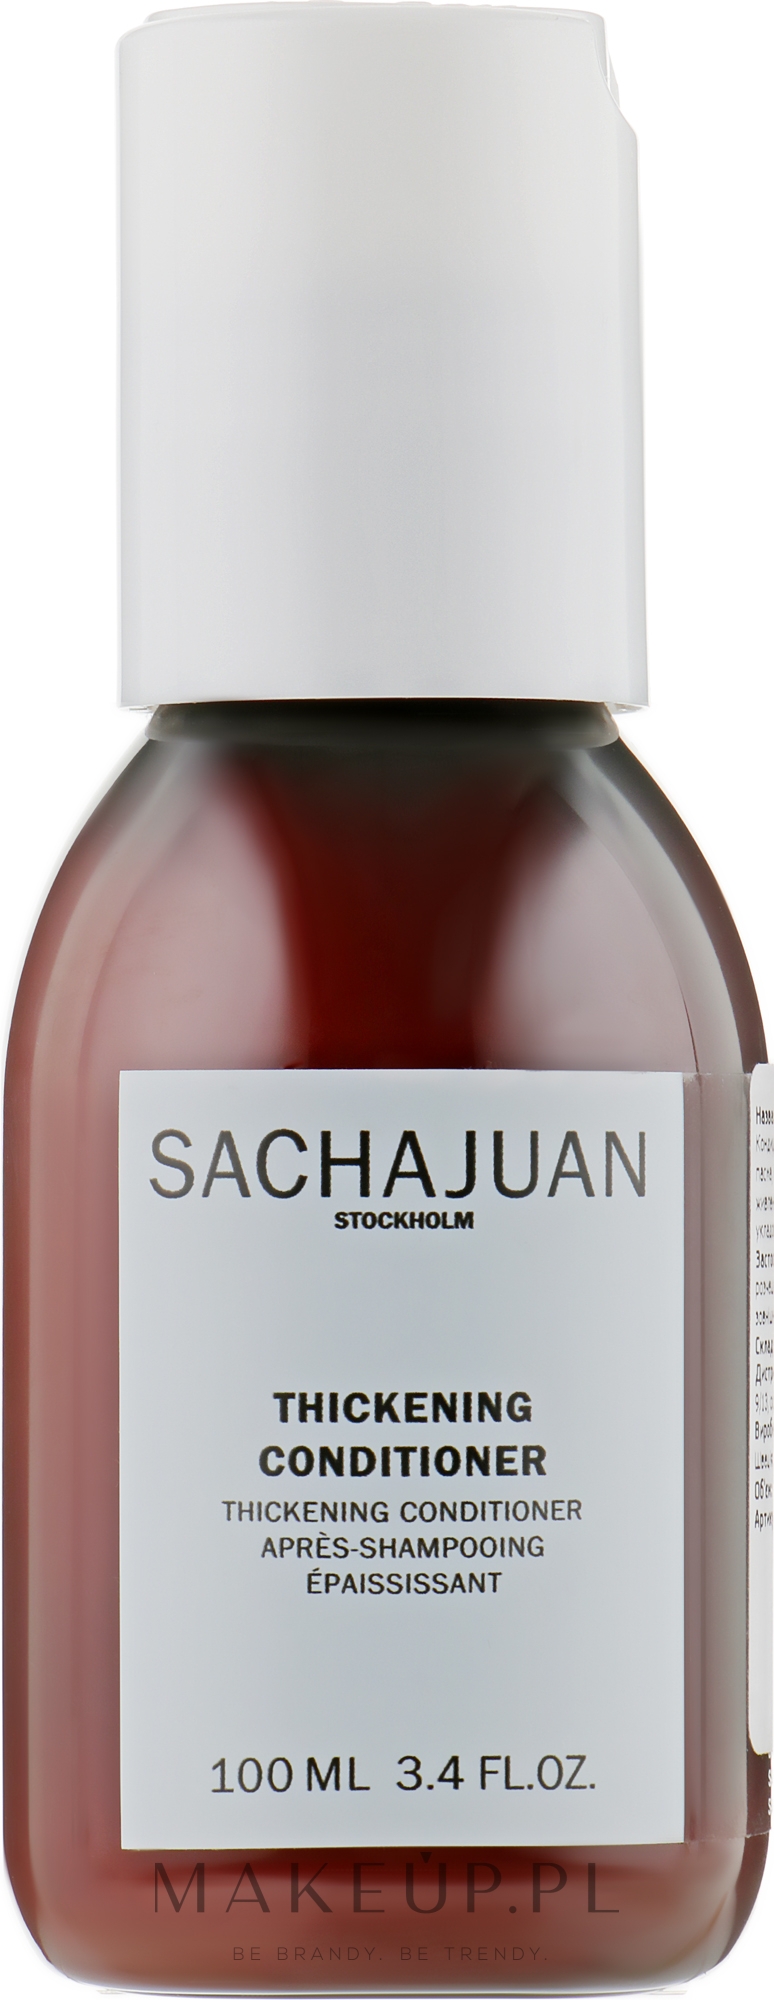 Pogrubiająca odżywka do włosów - Sachajuan Stockholm Thickening Conditioner — Zdjęcie 100 ml